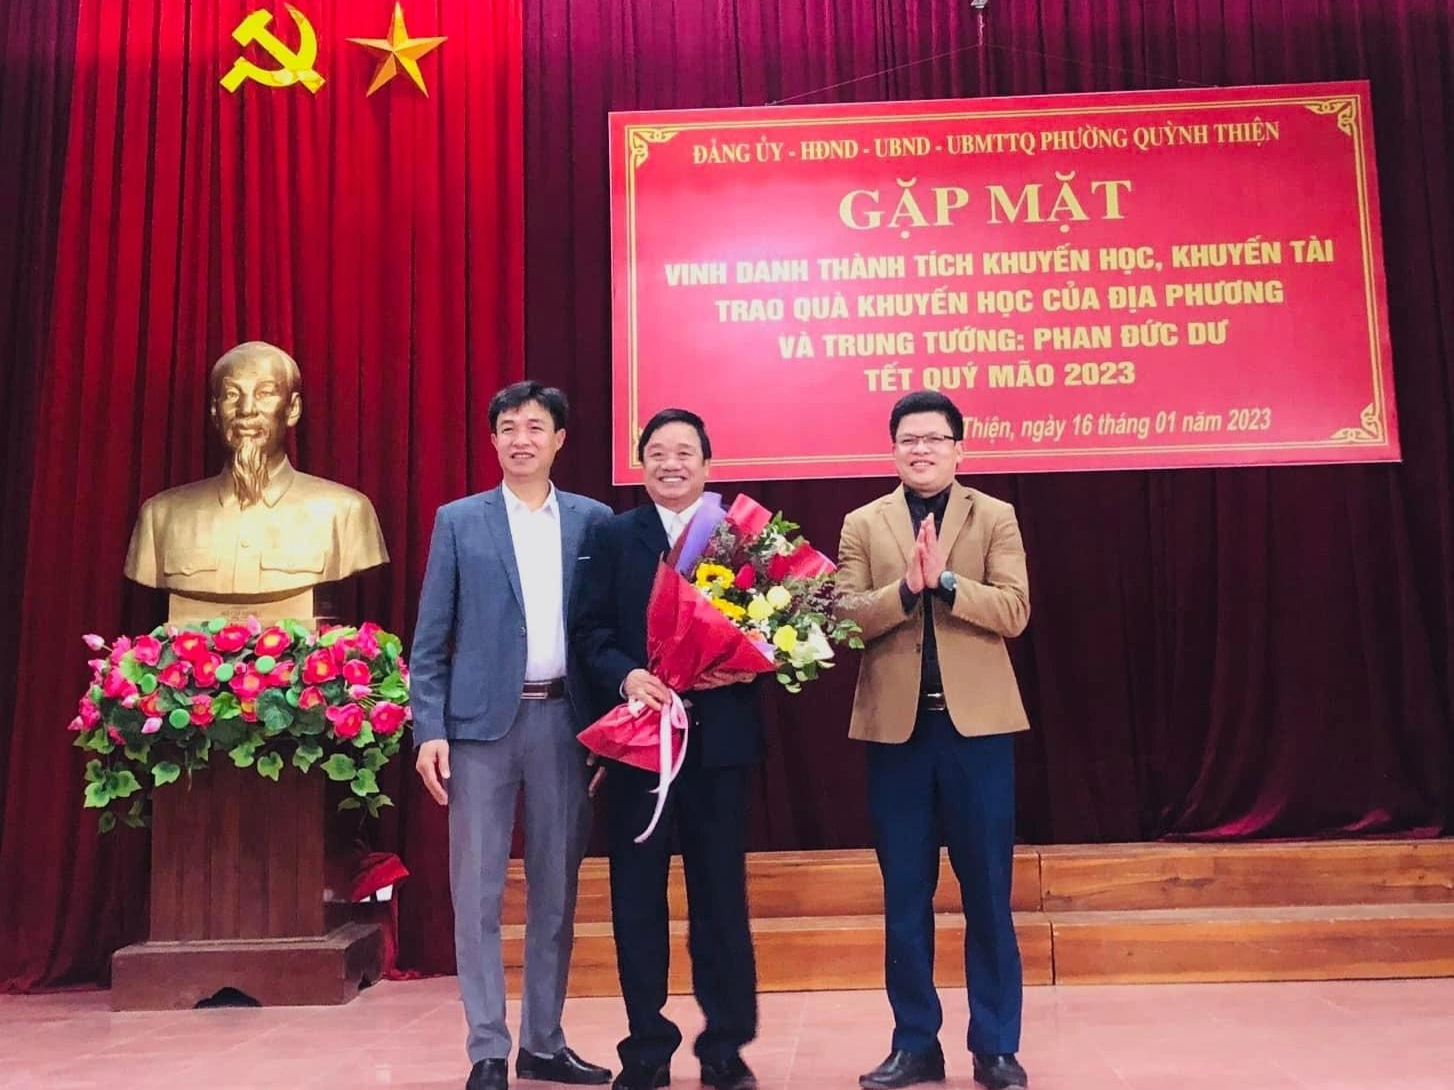 Thầy Nguyễn Bá Vinh, Hiệu trưởng Trường THPT Hoàng Mai vinh dự nhận quà của Trung tướng Phan Đức Dư khi được nhà nước công nhận Nhà giáo ưu tú (Ảnh: Nguyễn Phê).